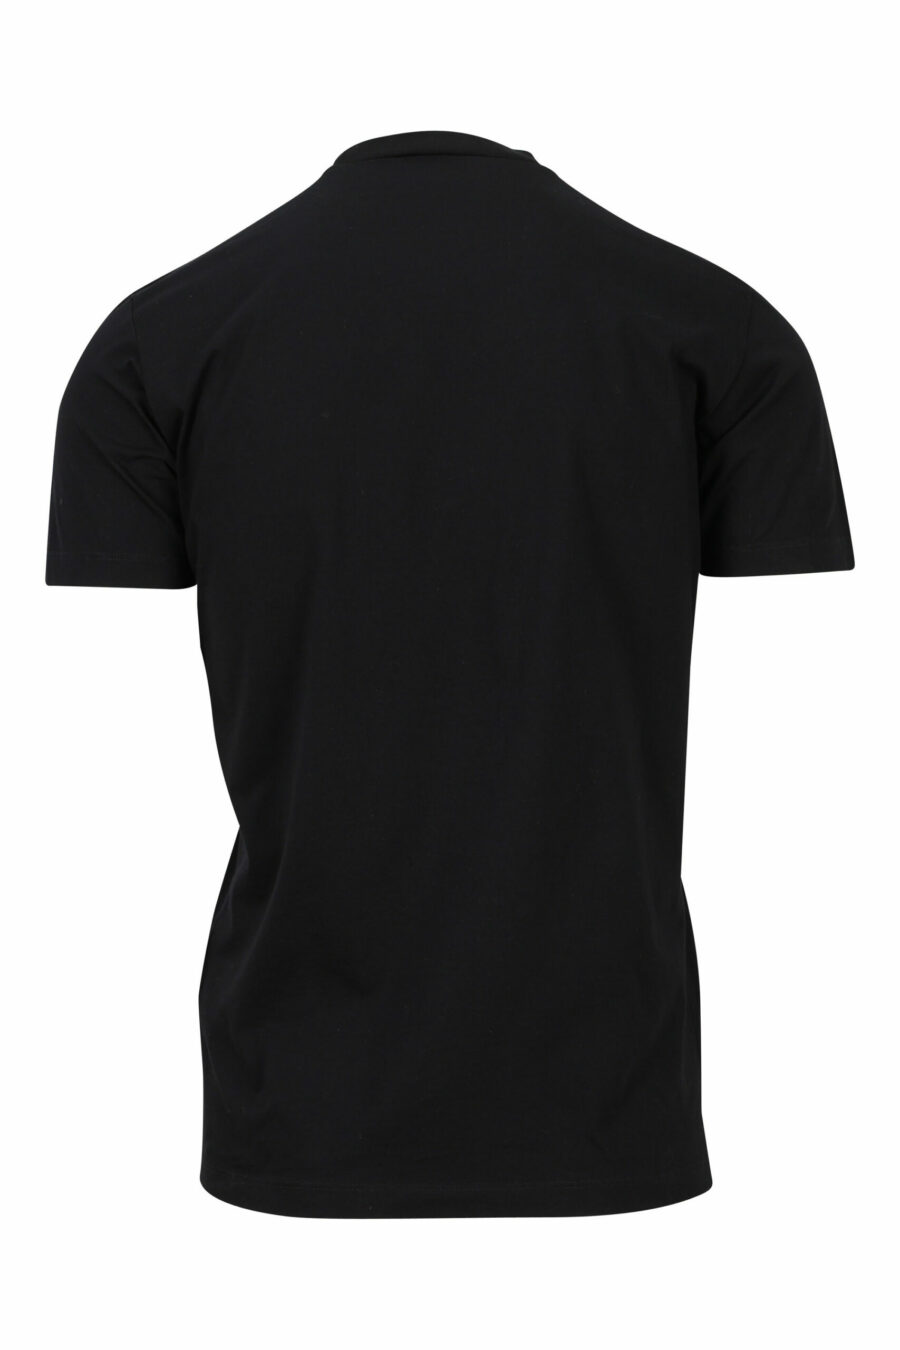 Camiseta negra con maxilogo monocromático en relieve - 8052134946459 1 scaled